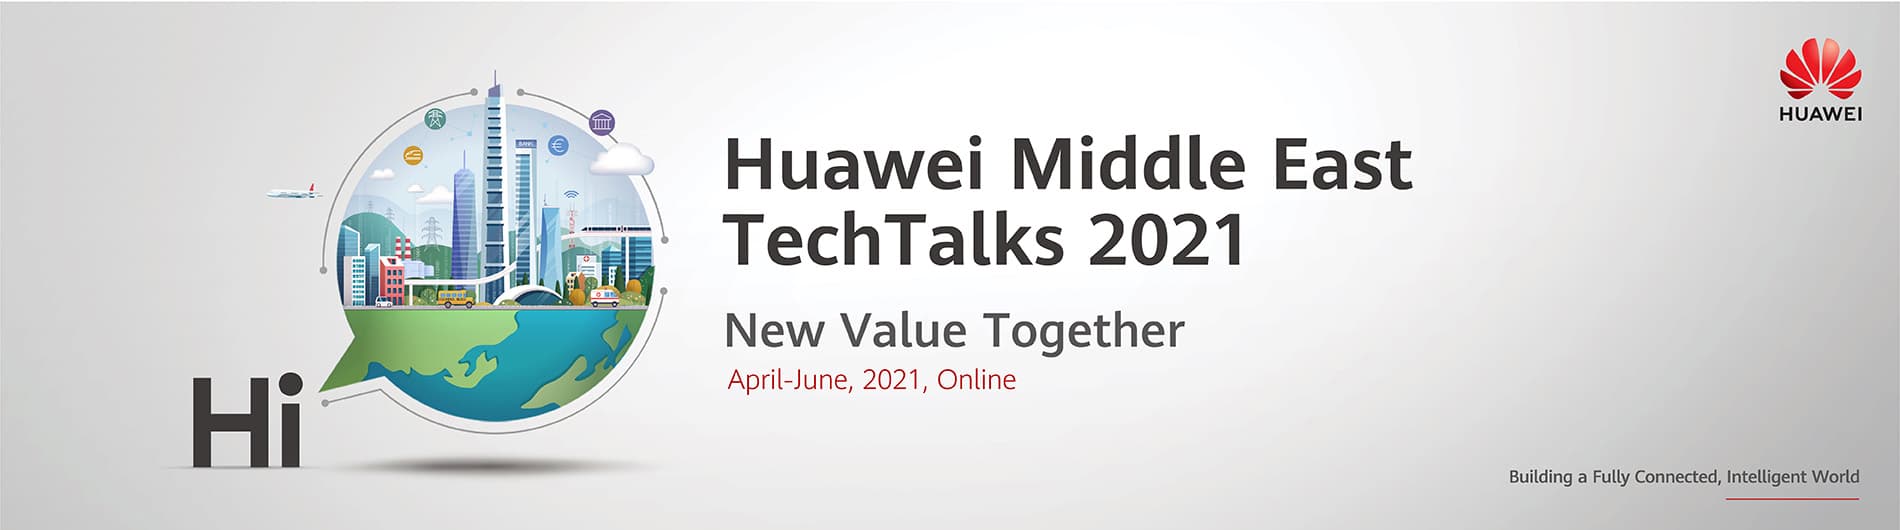 huaweime-techtalks2021